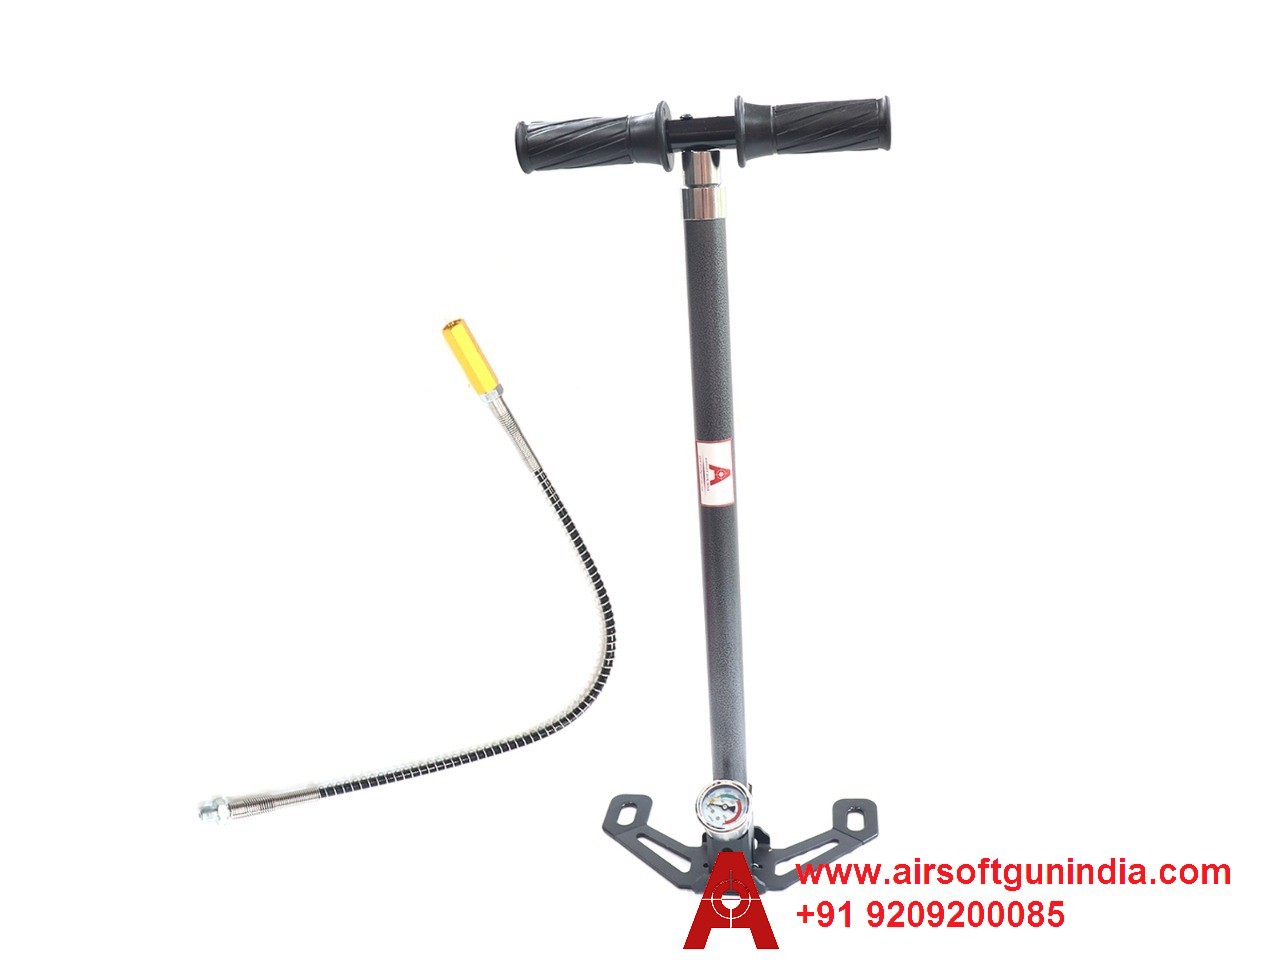 Hand Pump For PCP Air Rifle By Airsoft Gun India